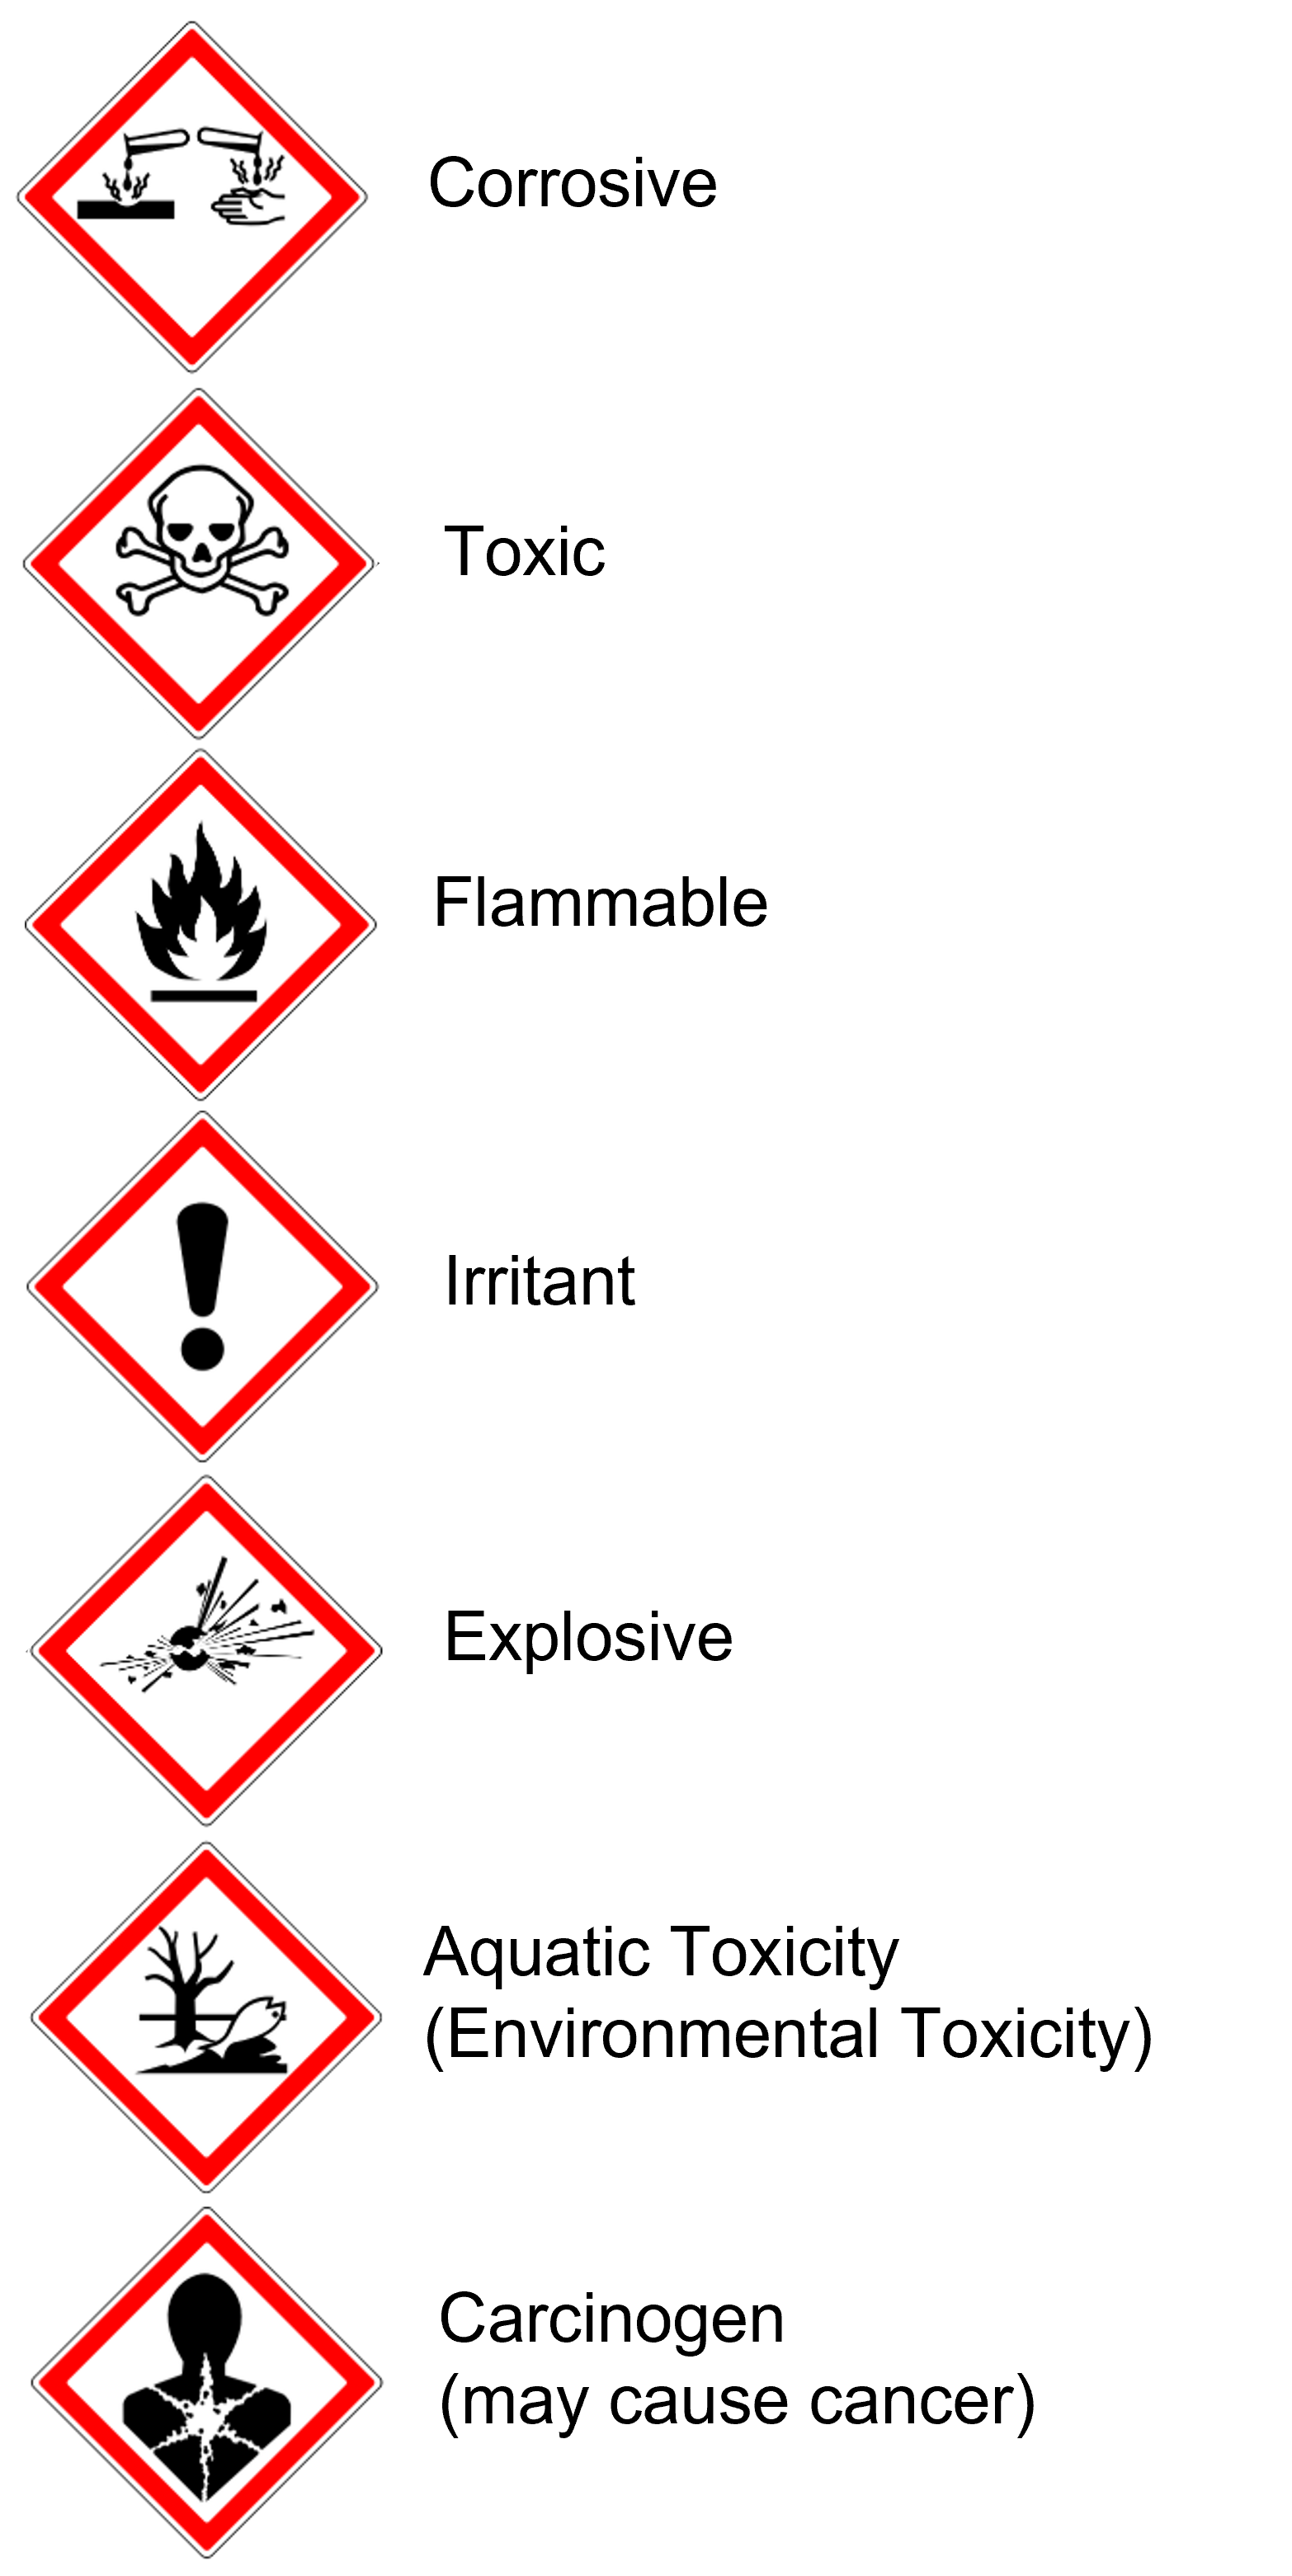 household hazard symbols